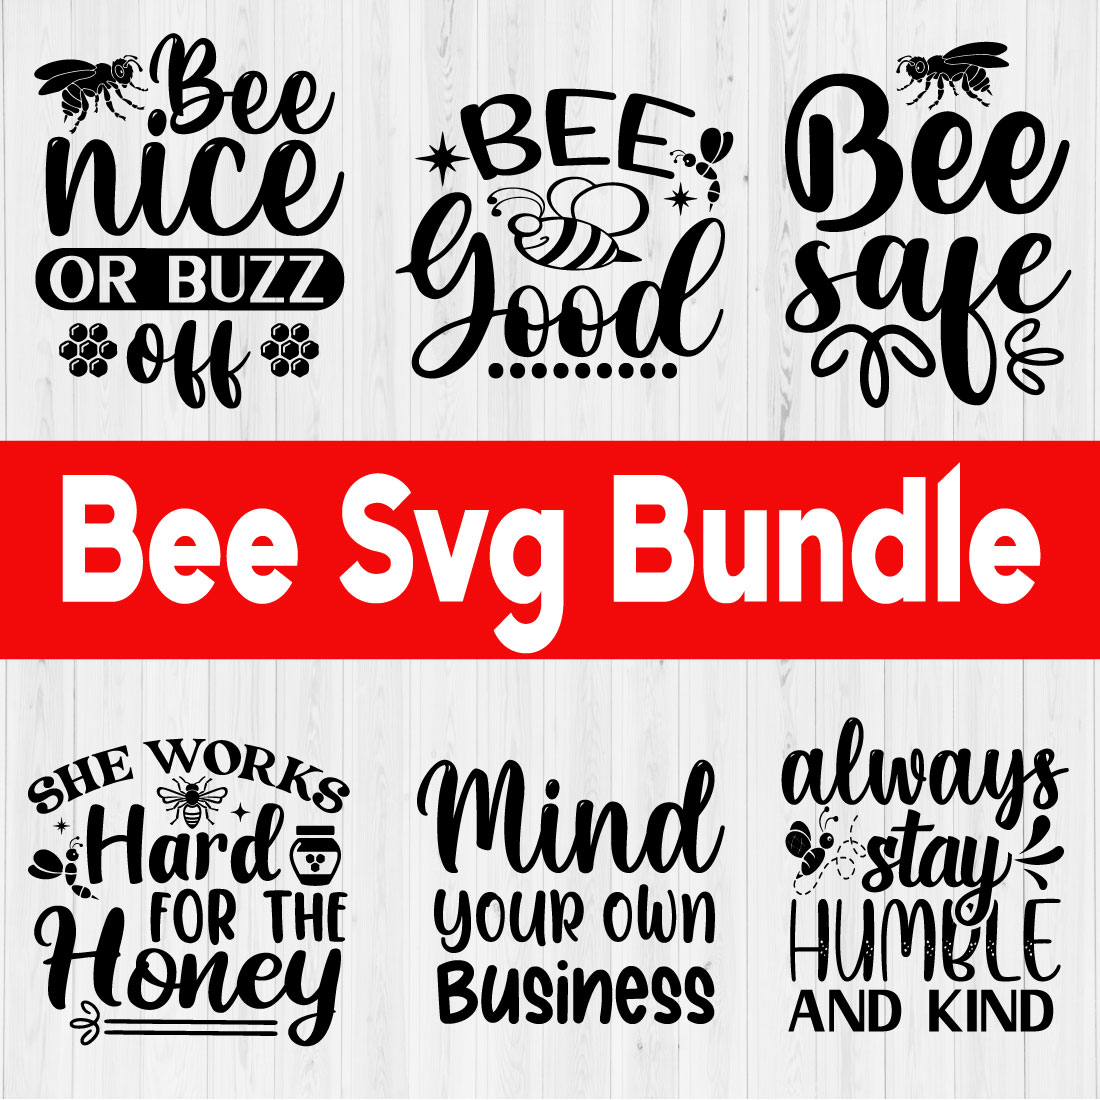 Bee Svg Design Bundle Vol2 cover image.